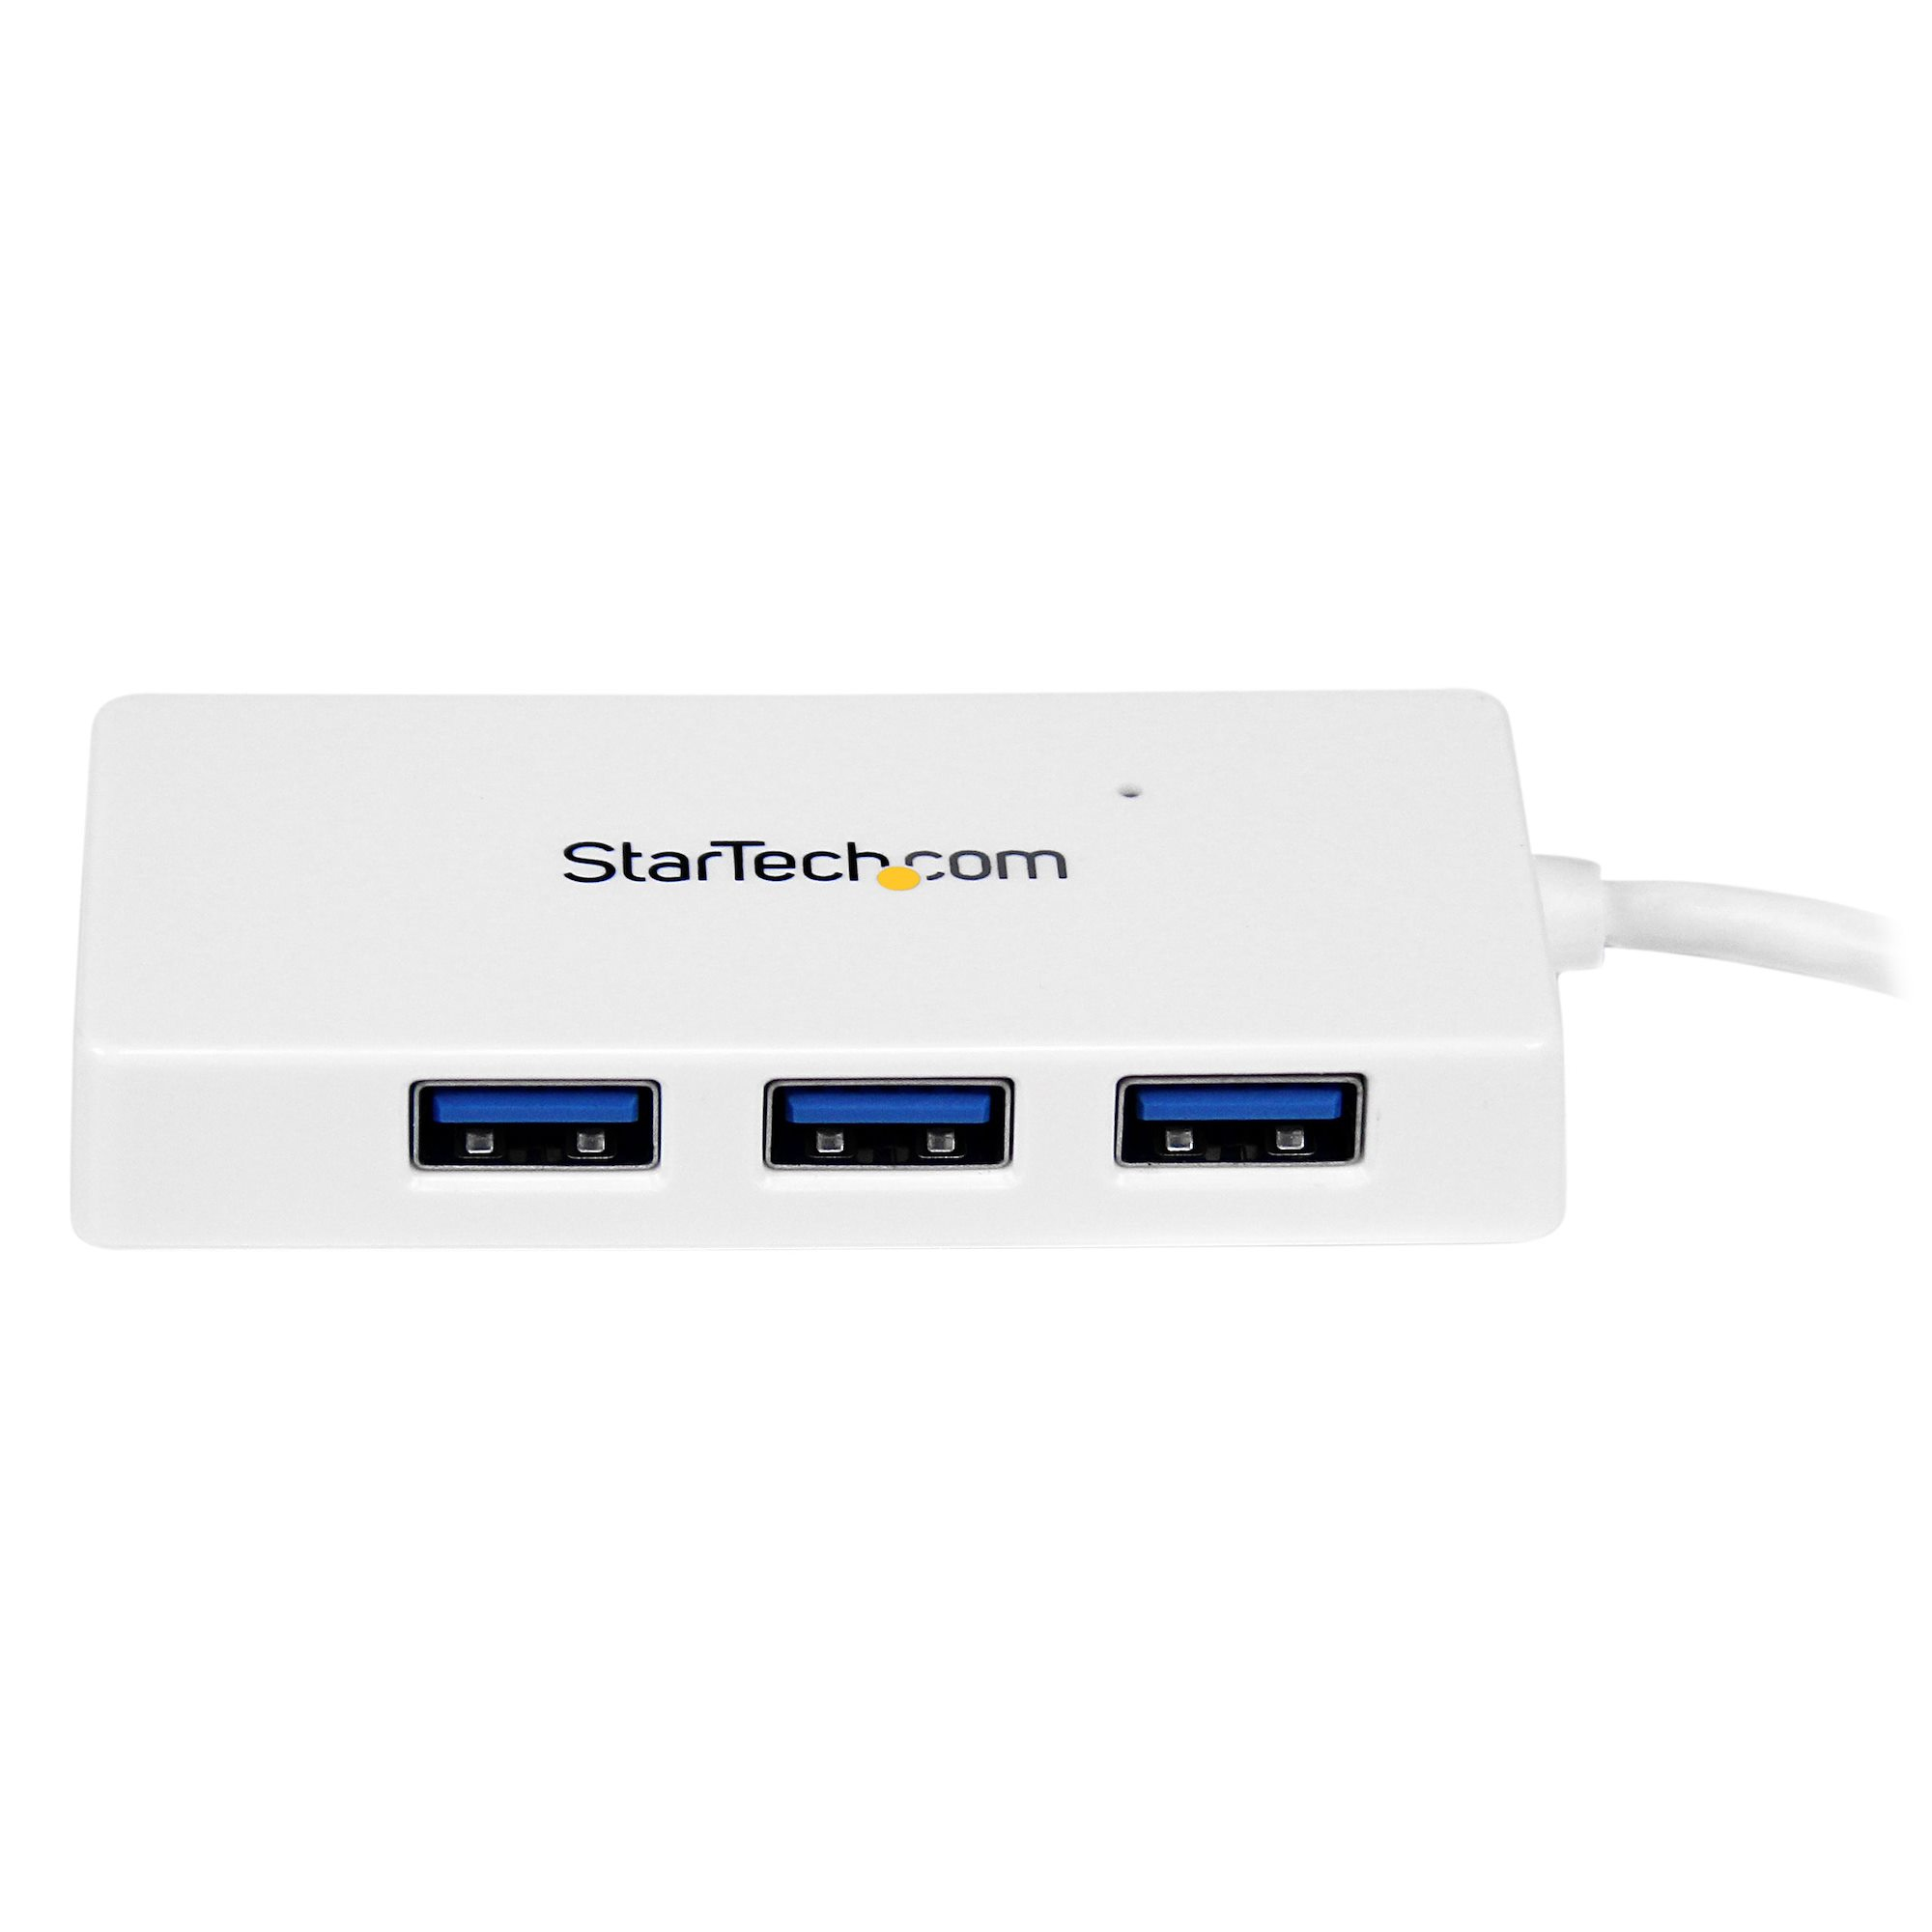 StarTech.com 4 Port USB 3.0 SuperSpeed Hub - Wei